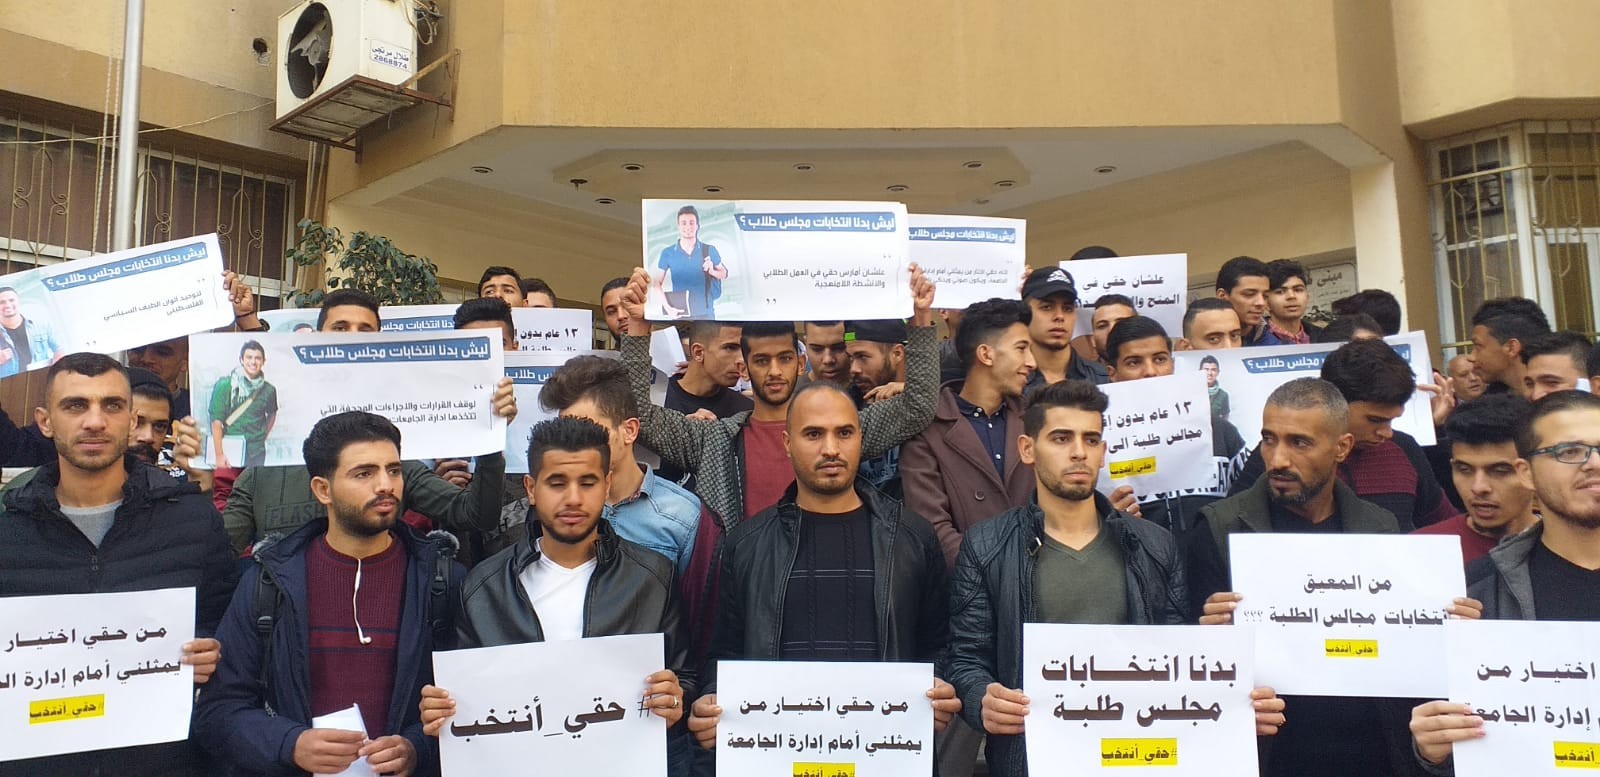 بالصور: اعتصام داخل جامعة الأزهر بغزة للمطالبة بإجراء انتخابات مجلس الطلبة